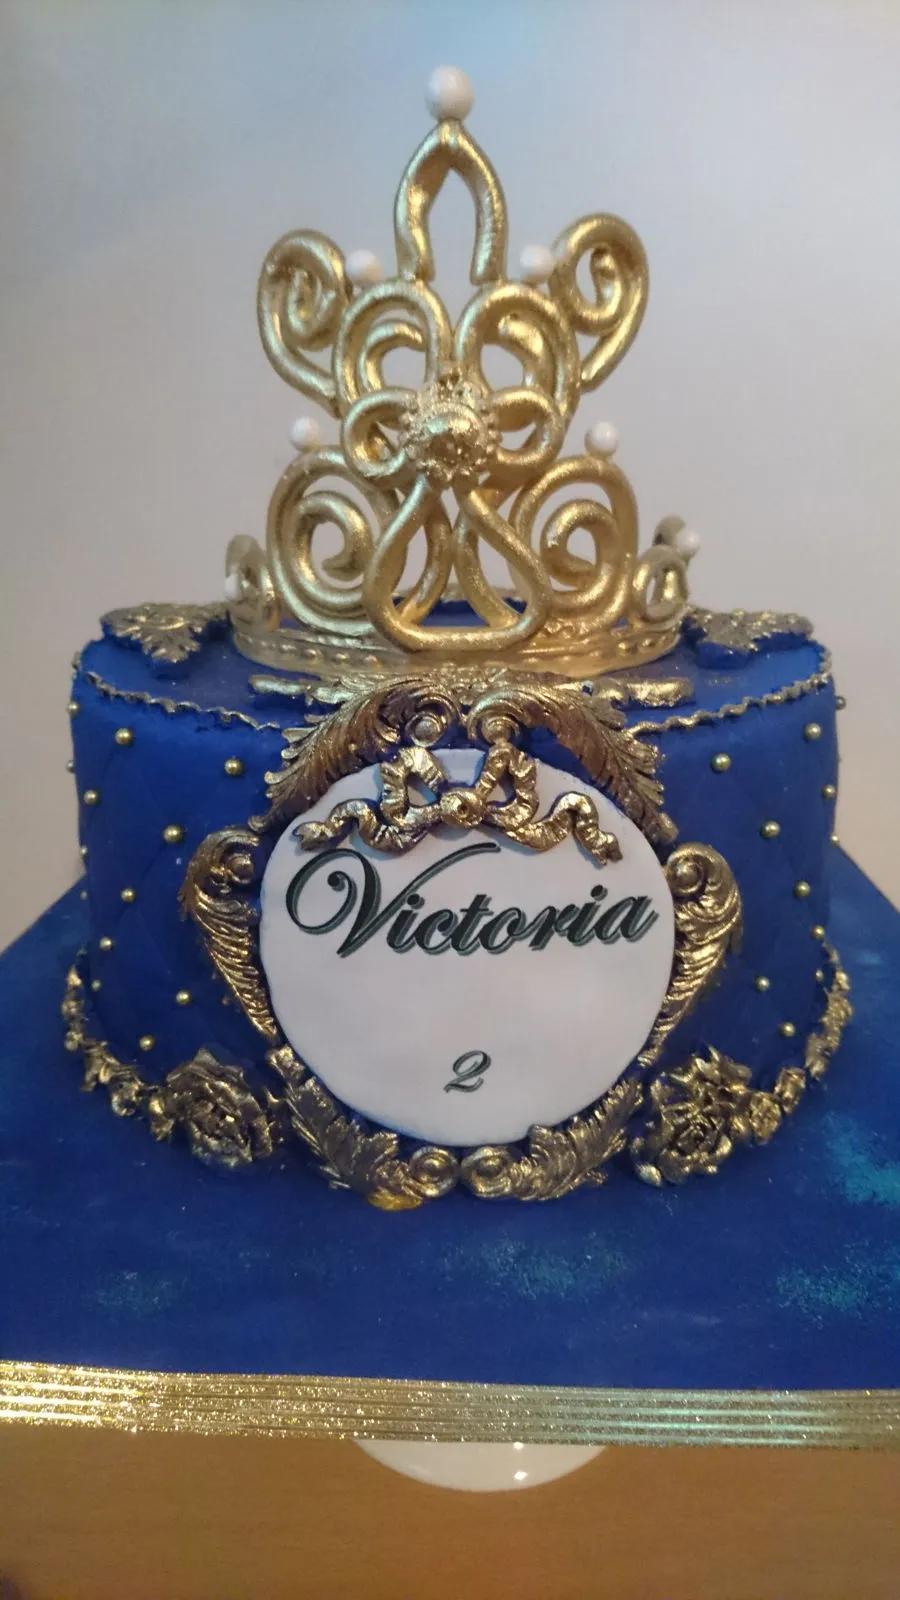 Victoria Cake Royal Cake - CakeCentral.com